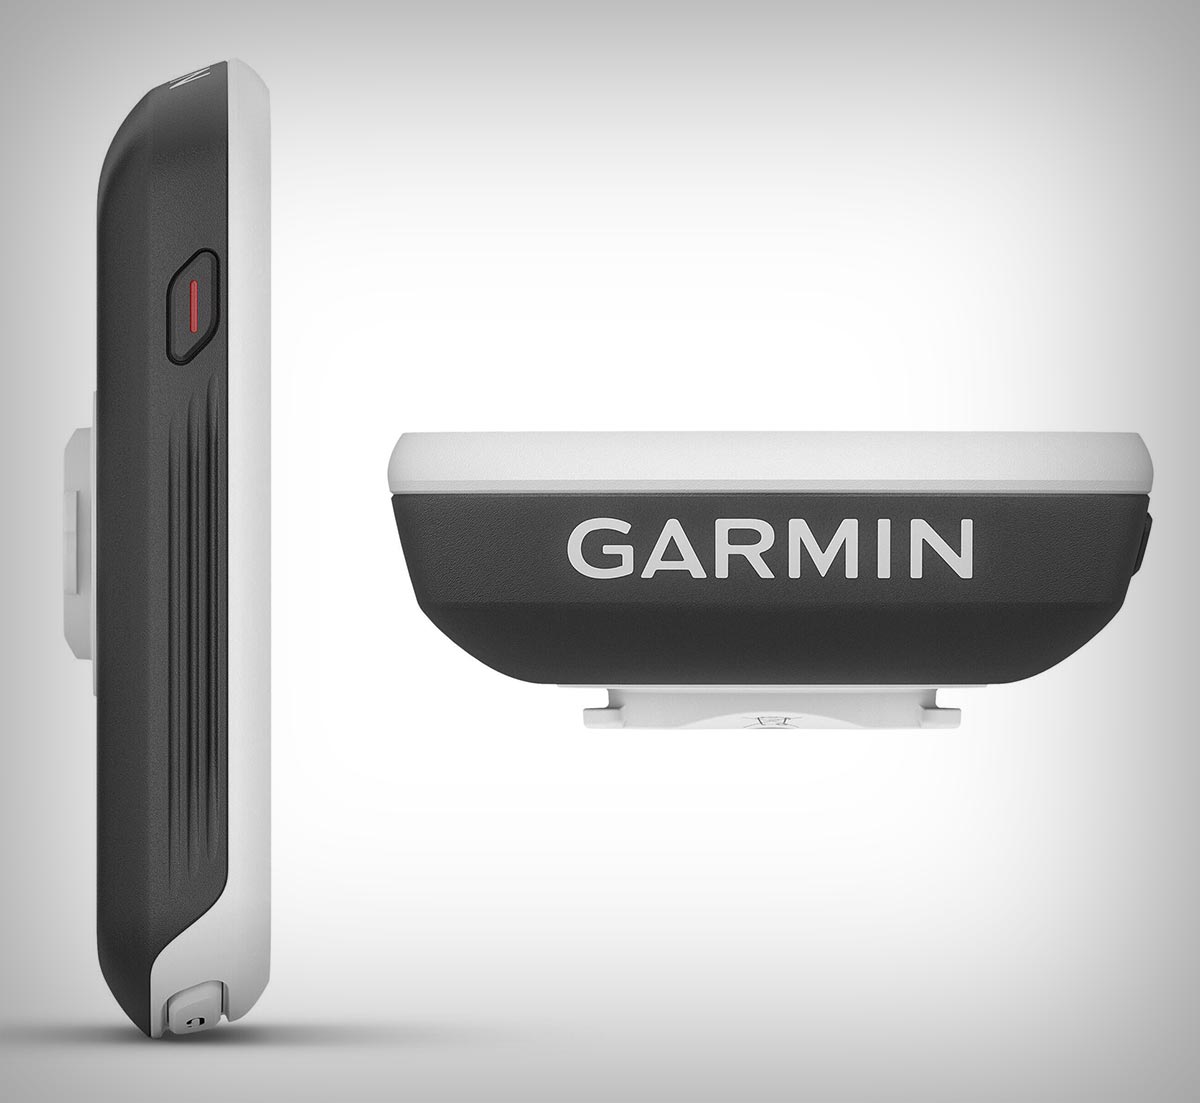 Cazando ofertas: el Garmin Edge Explore, el ciclocomputador ideal para descubrir rutas nuevas, al mejor precio en Decathlon